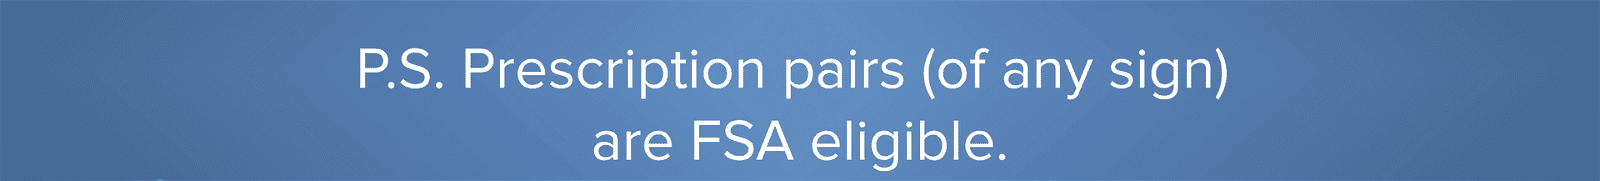 Prescription pairs are FSA eligible